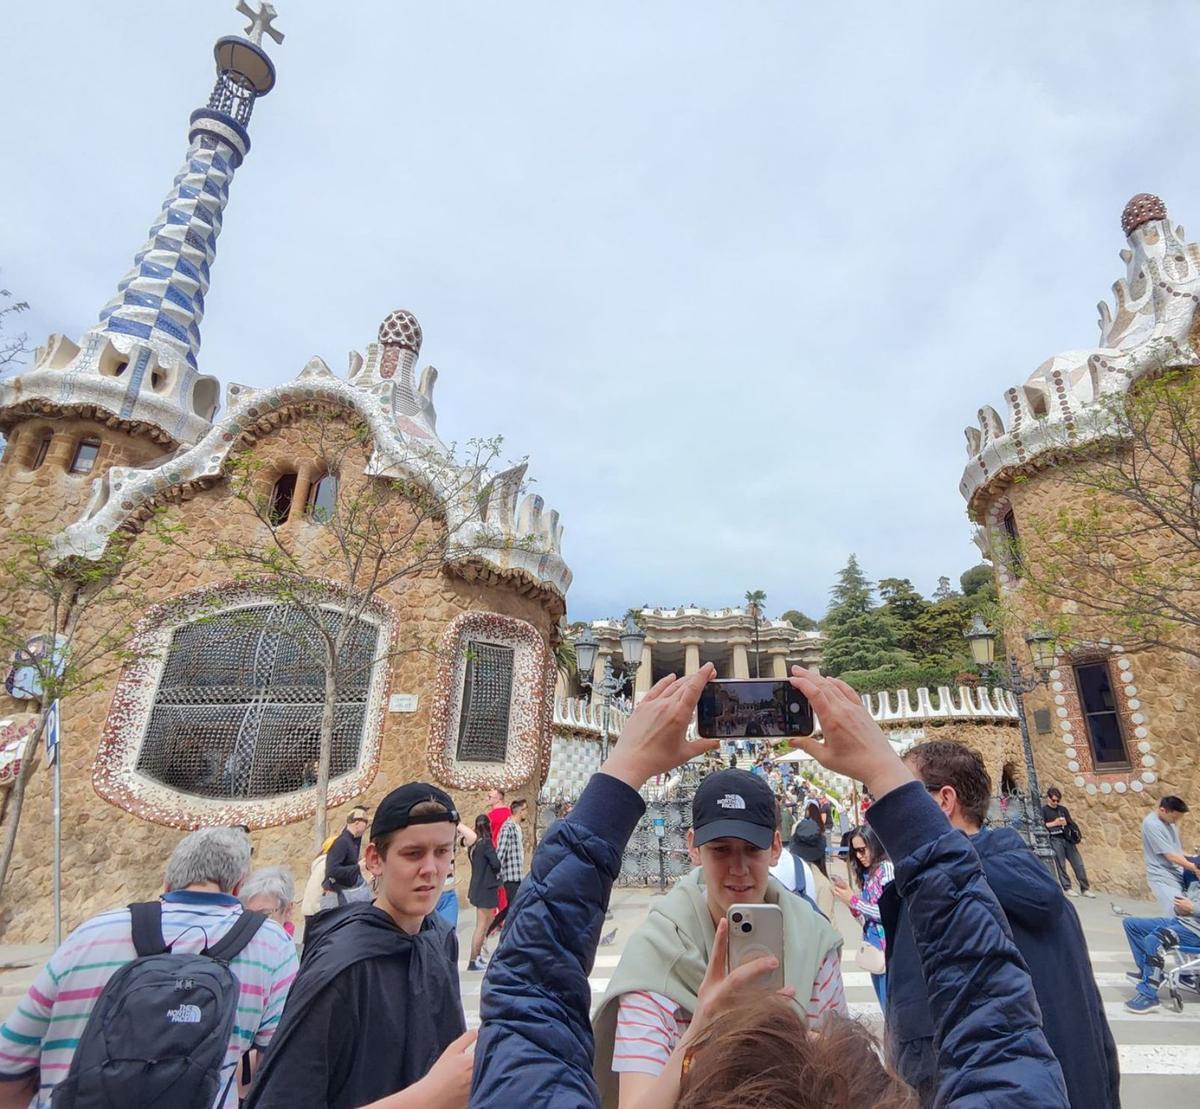 La despesa per turista i dia a BCN supera els 90 € per primer cop